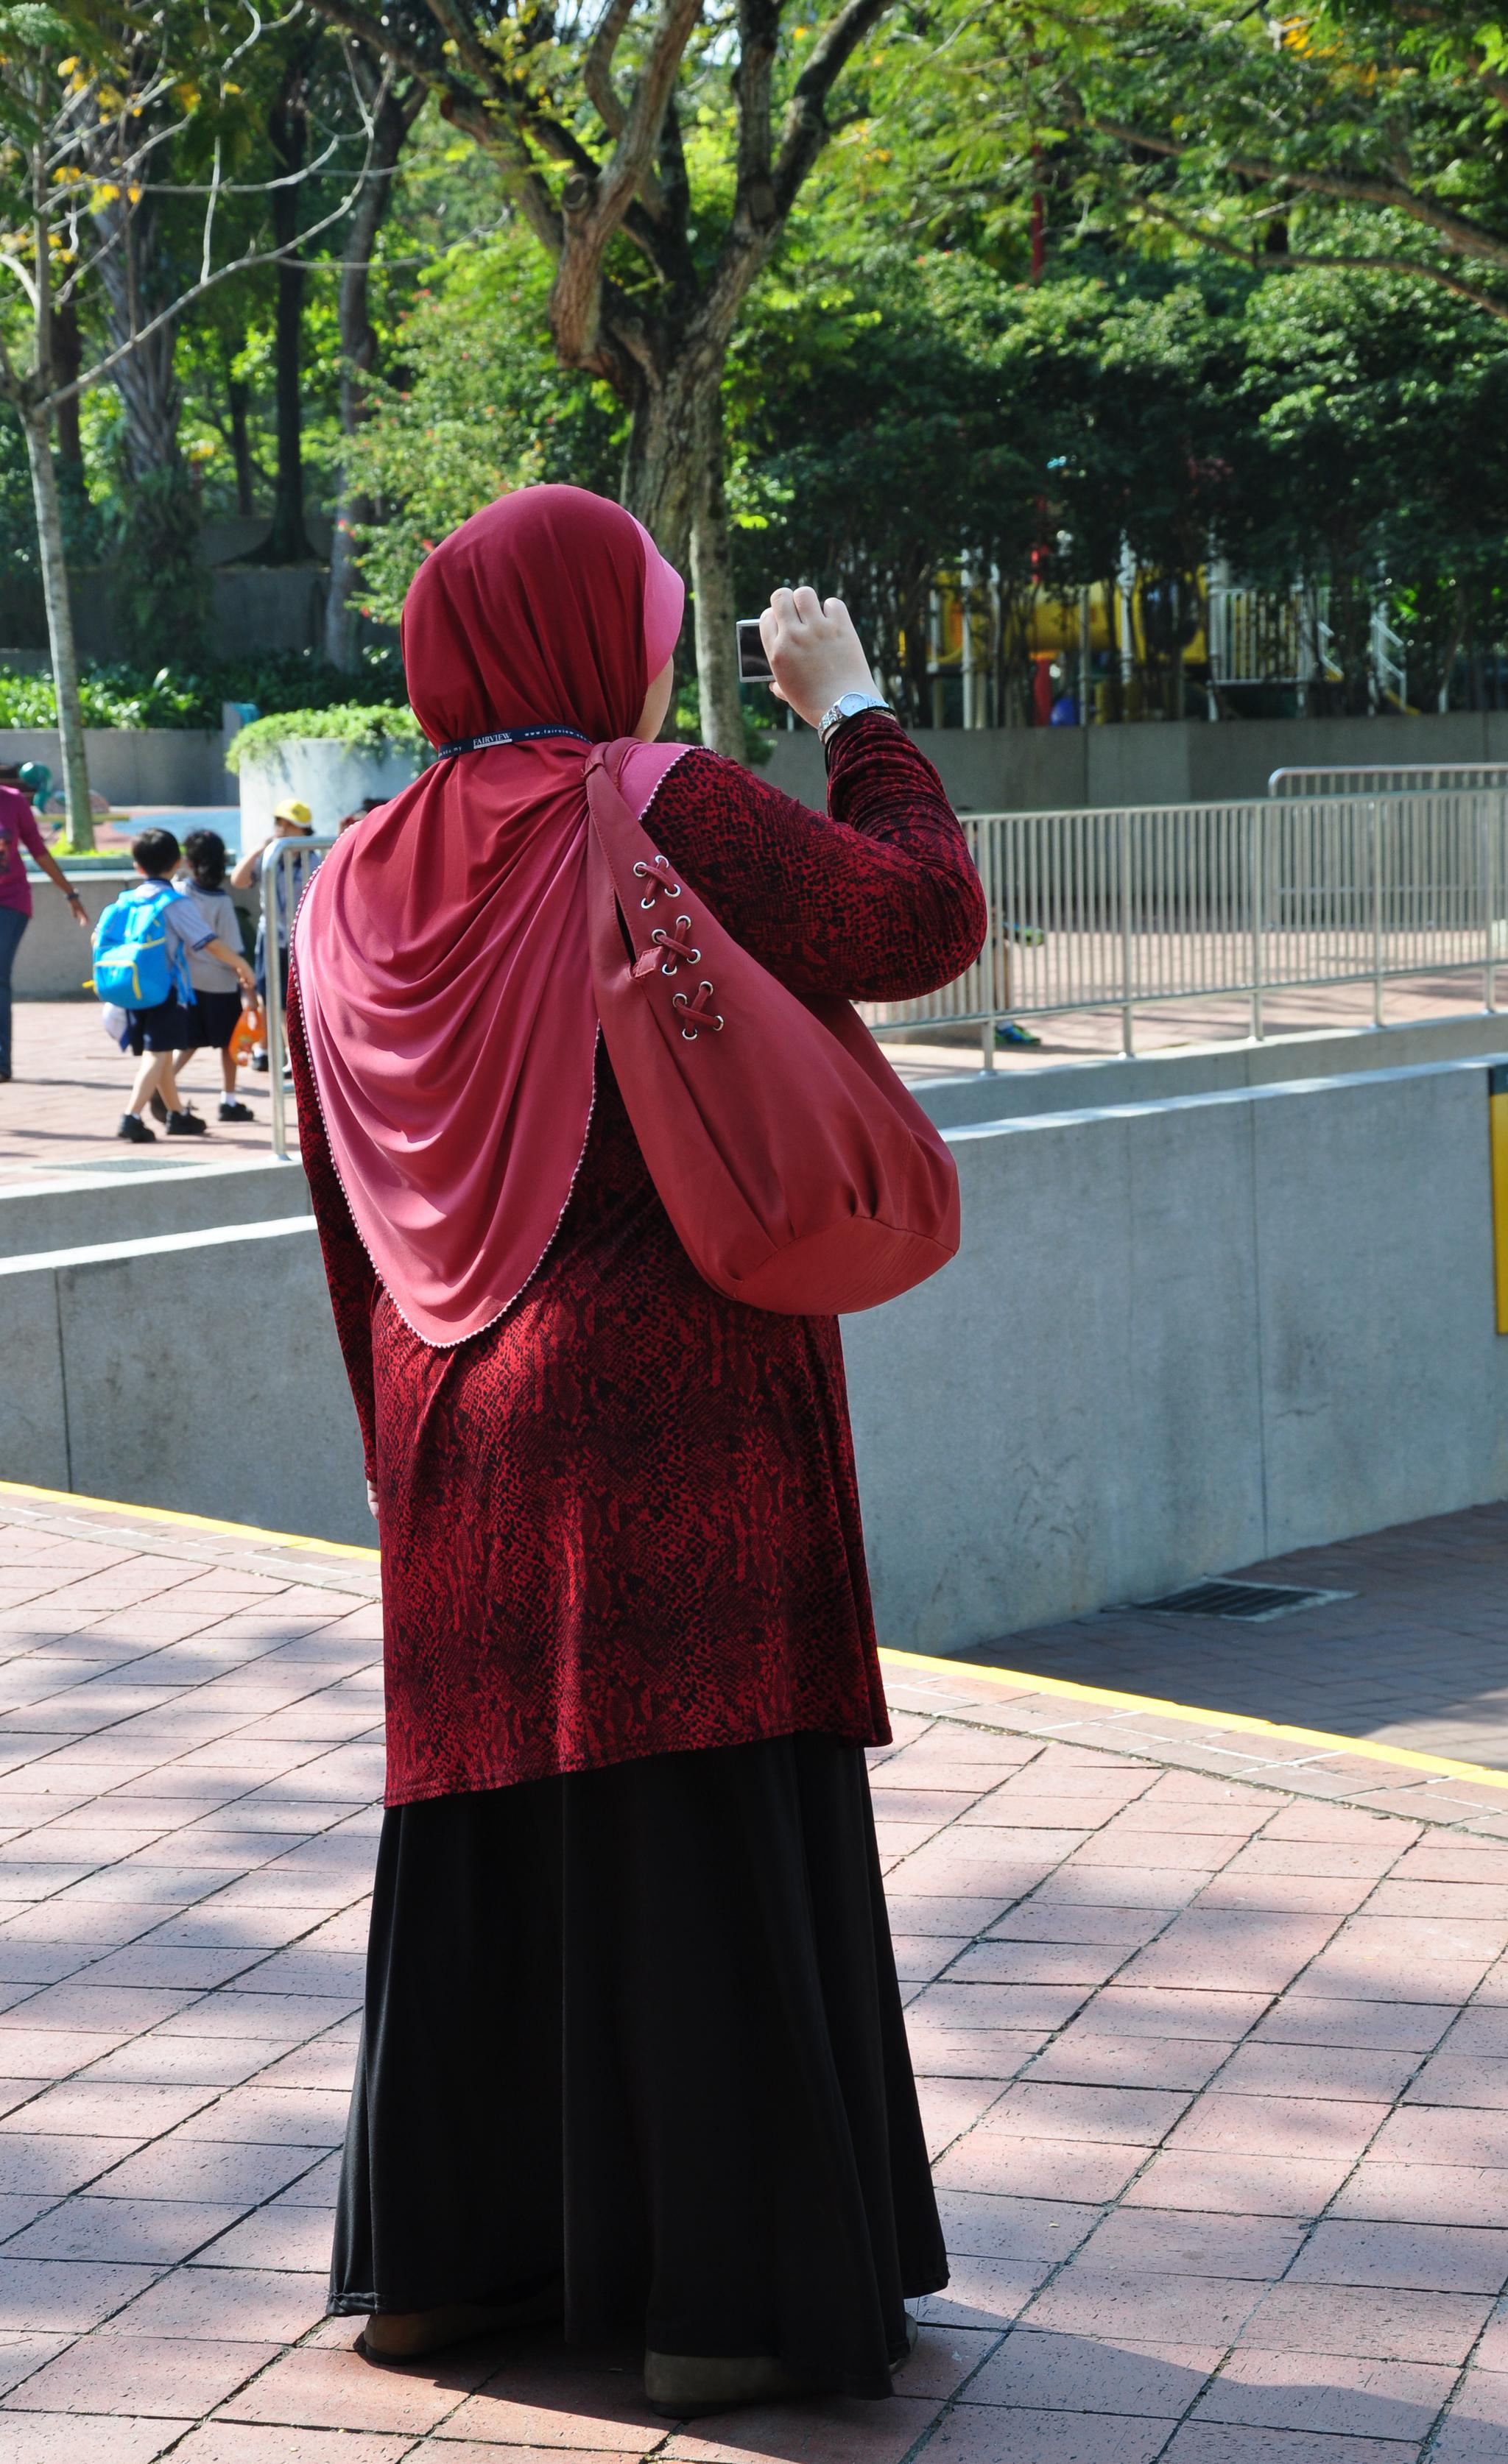 吉隆坡街头的伊斯兰美女【原创摄影】